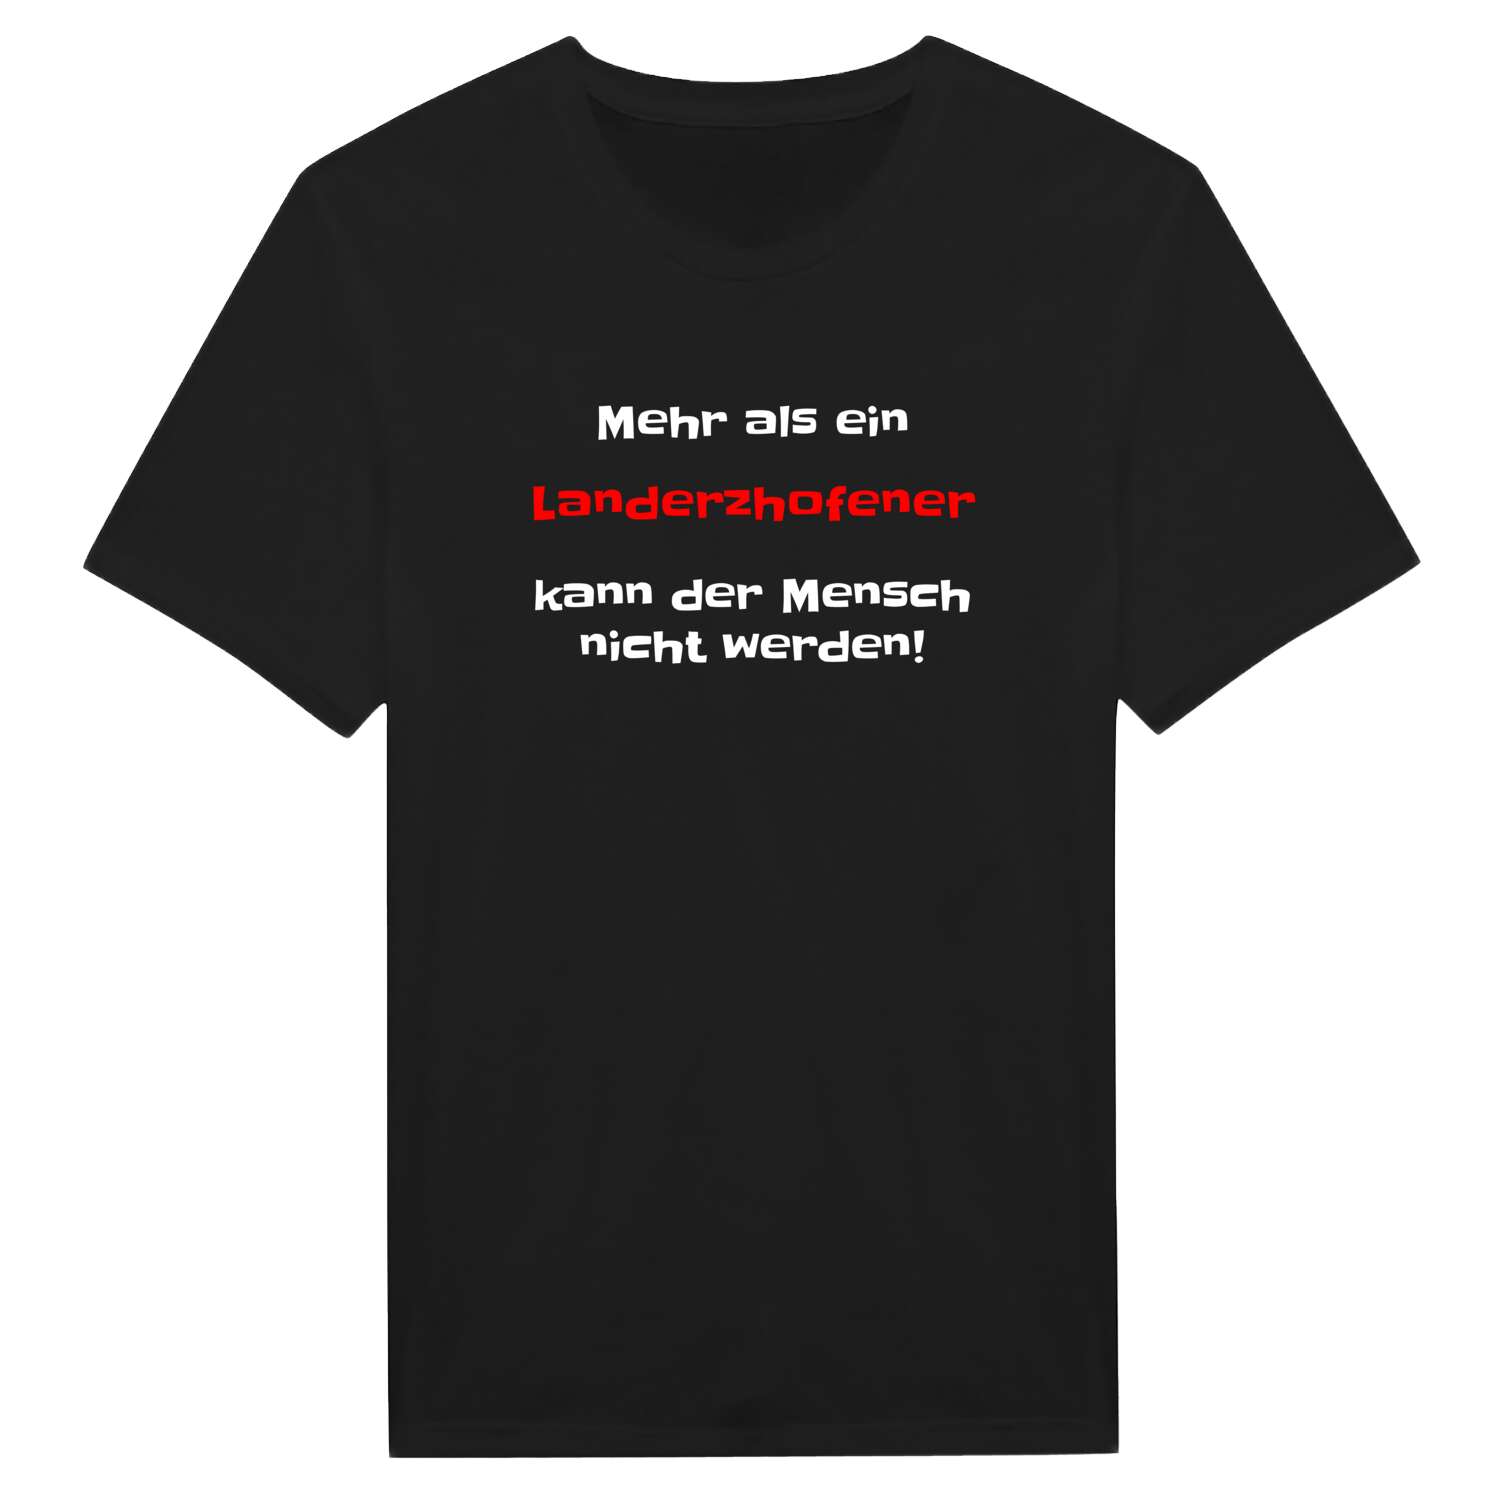 Landerzhofen T-Shirt »Mehr als ein«